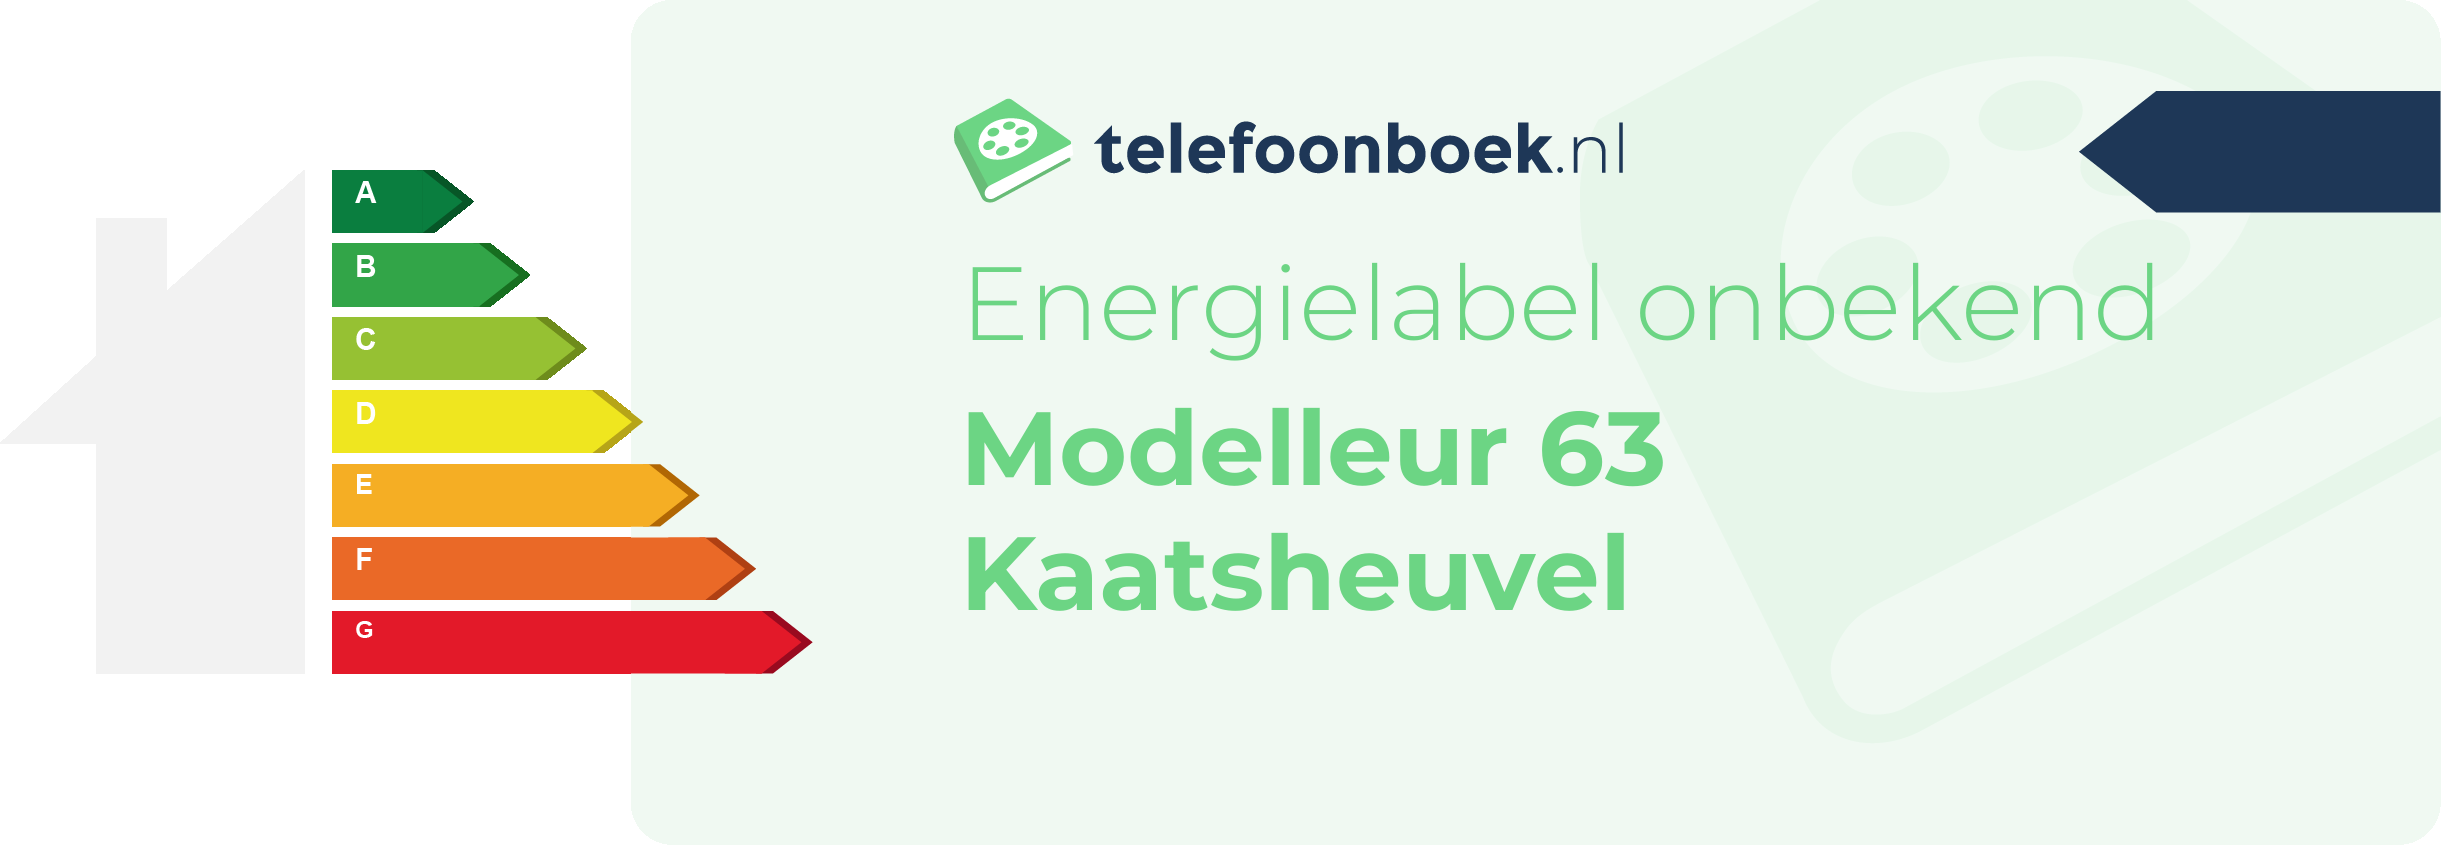 Energielabel Modelleur 63 Kaatsheuvel